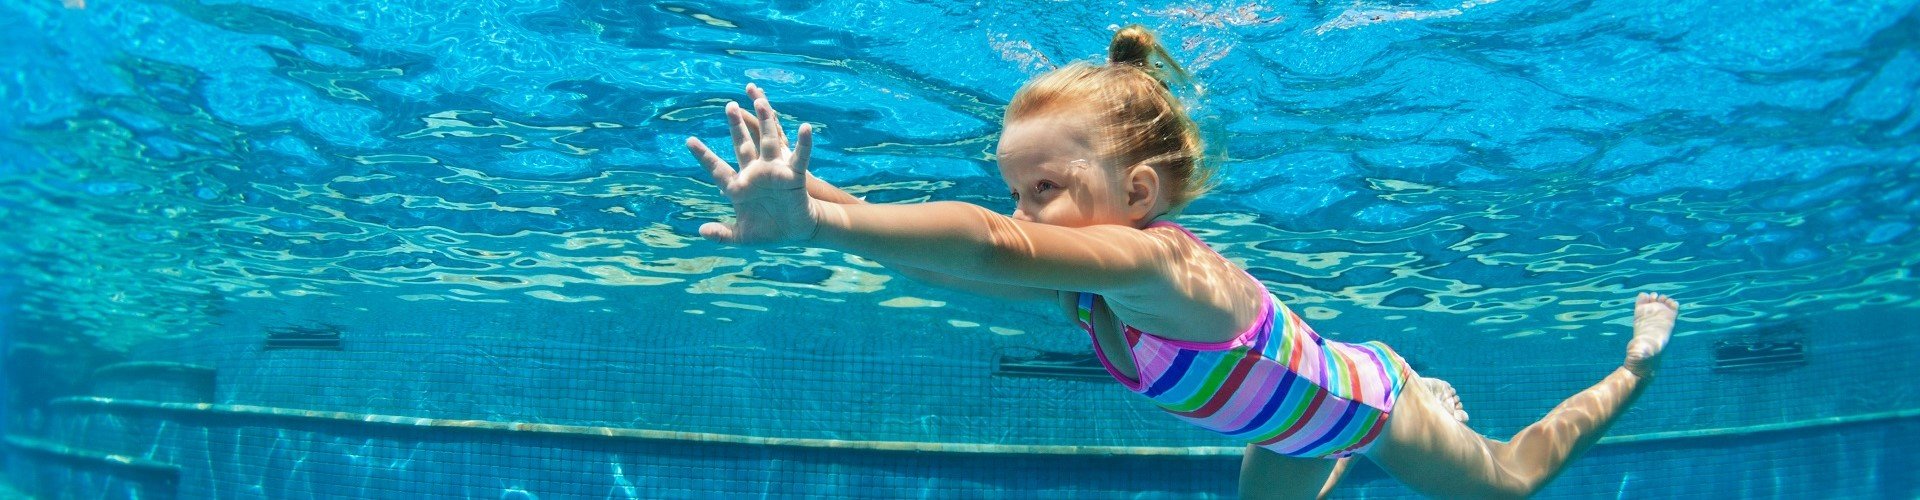 Schwimmen lernen im Familienurlaub